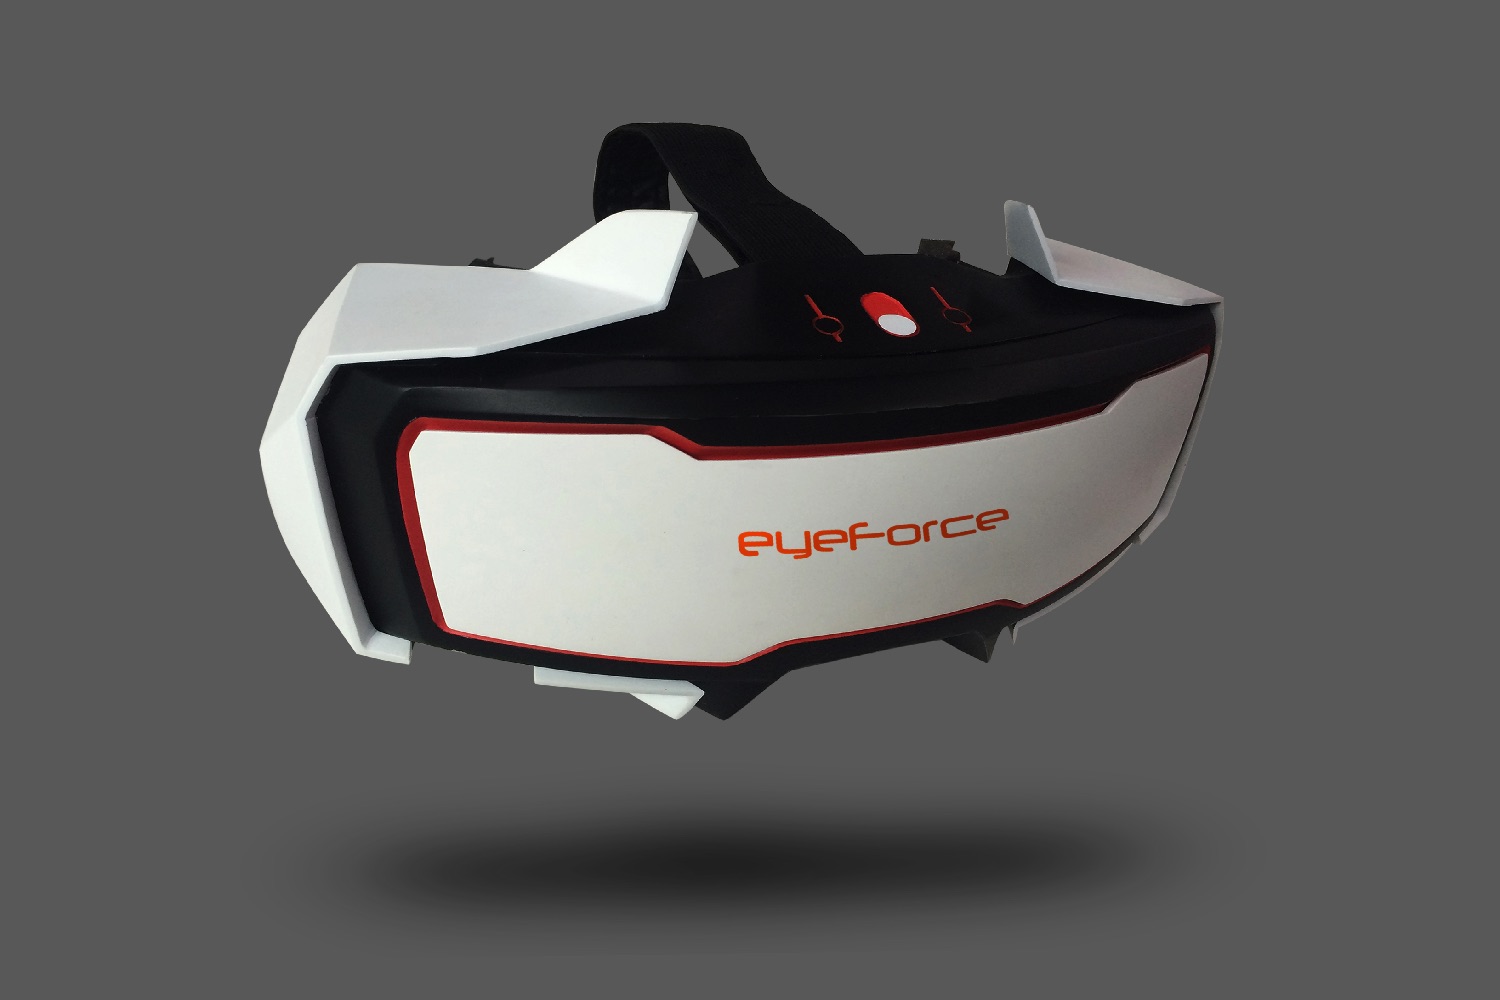 eyeforce kickstarter virtual reality img 5030